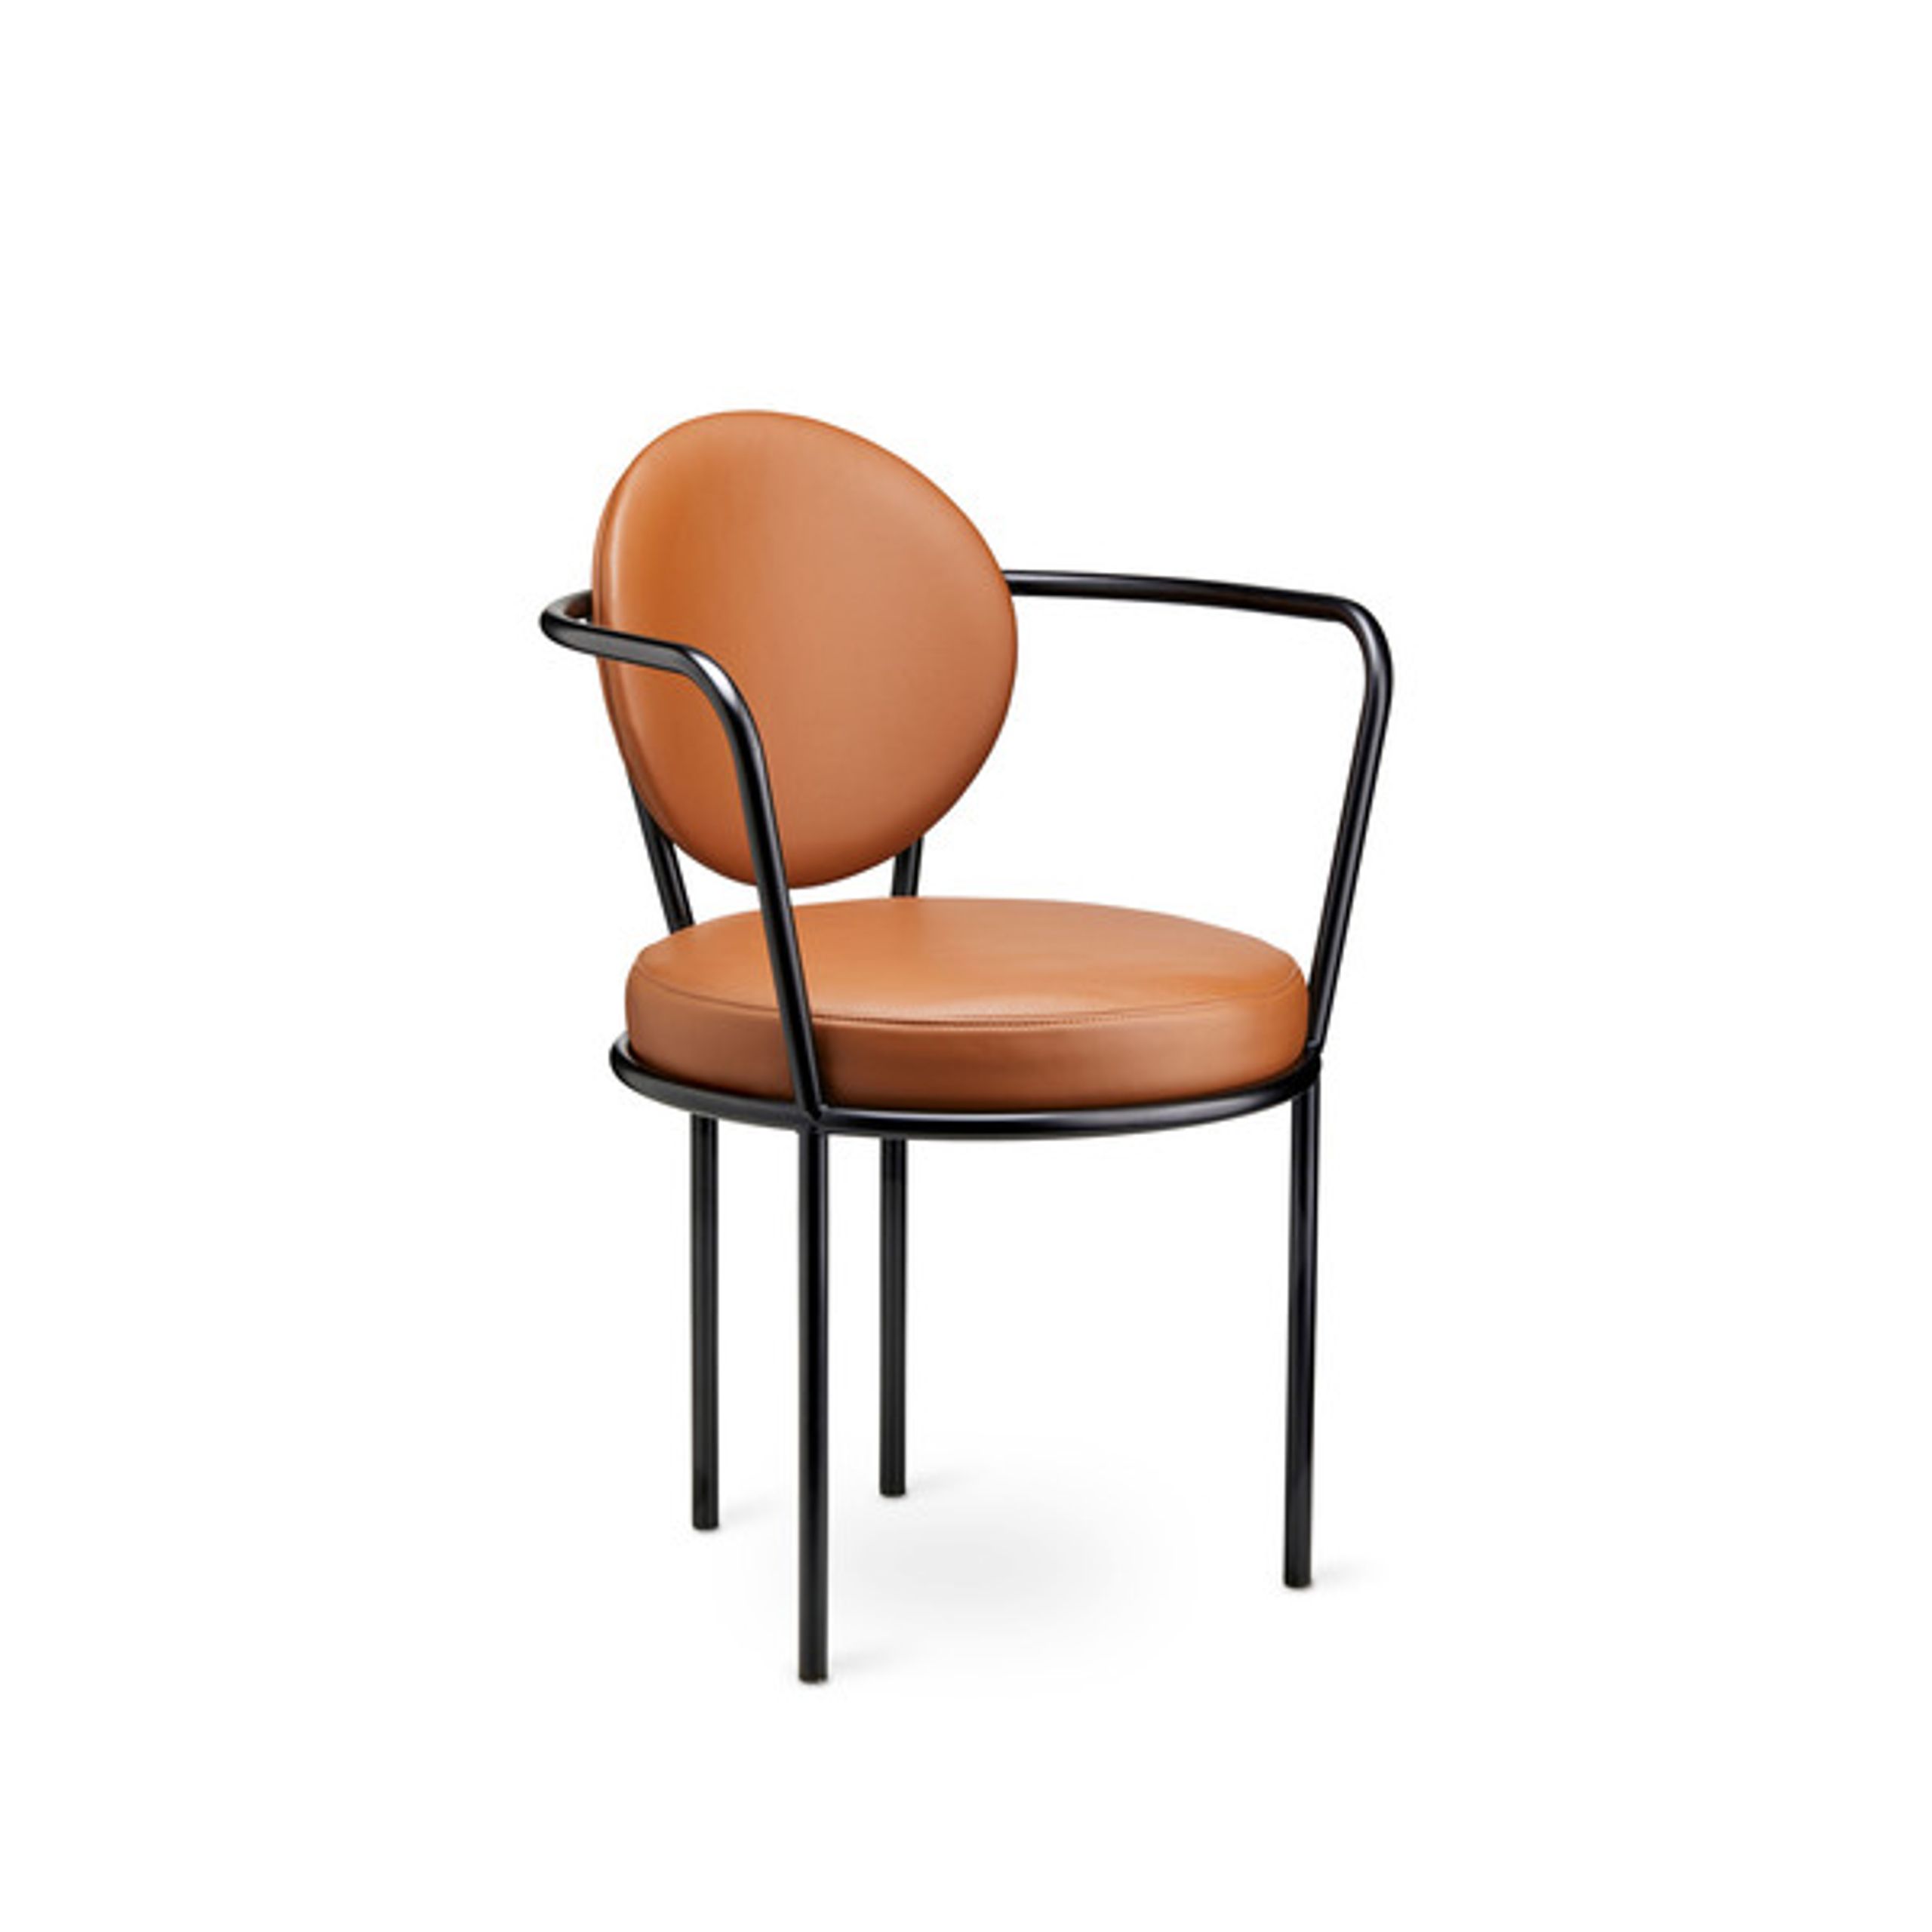 Design By Us - Esstischstuhl - Casablanca chair - Black Frame - Leather Sørensen Ultra - Cognac